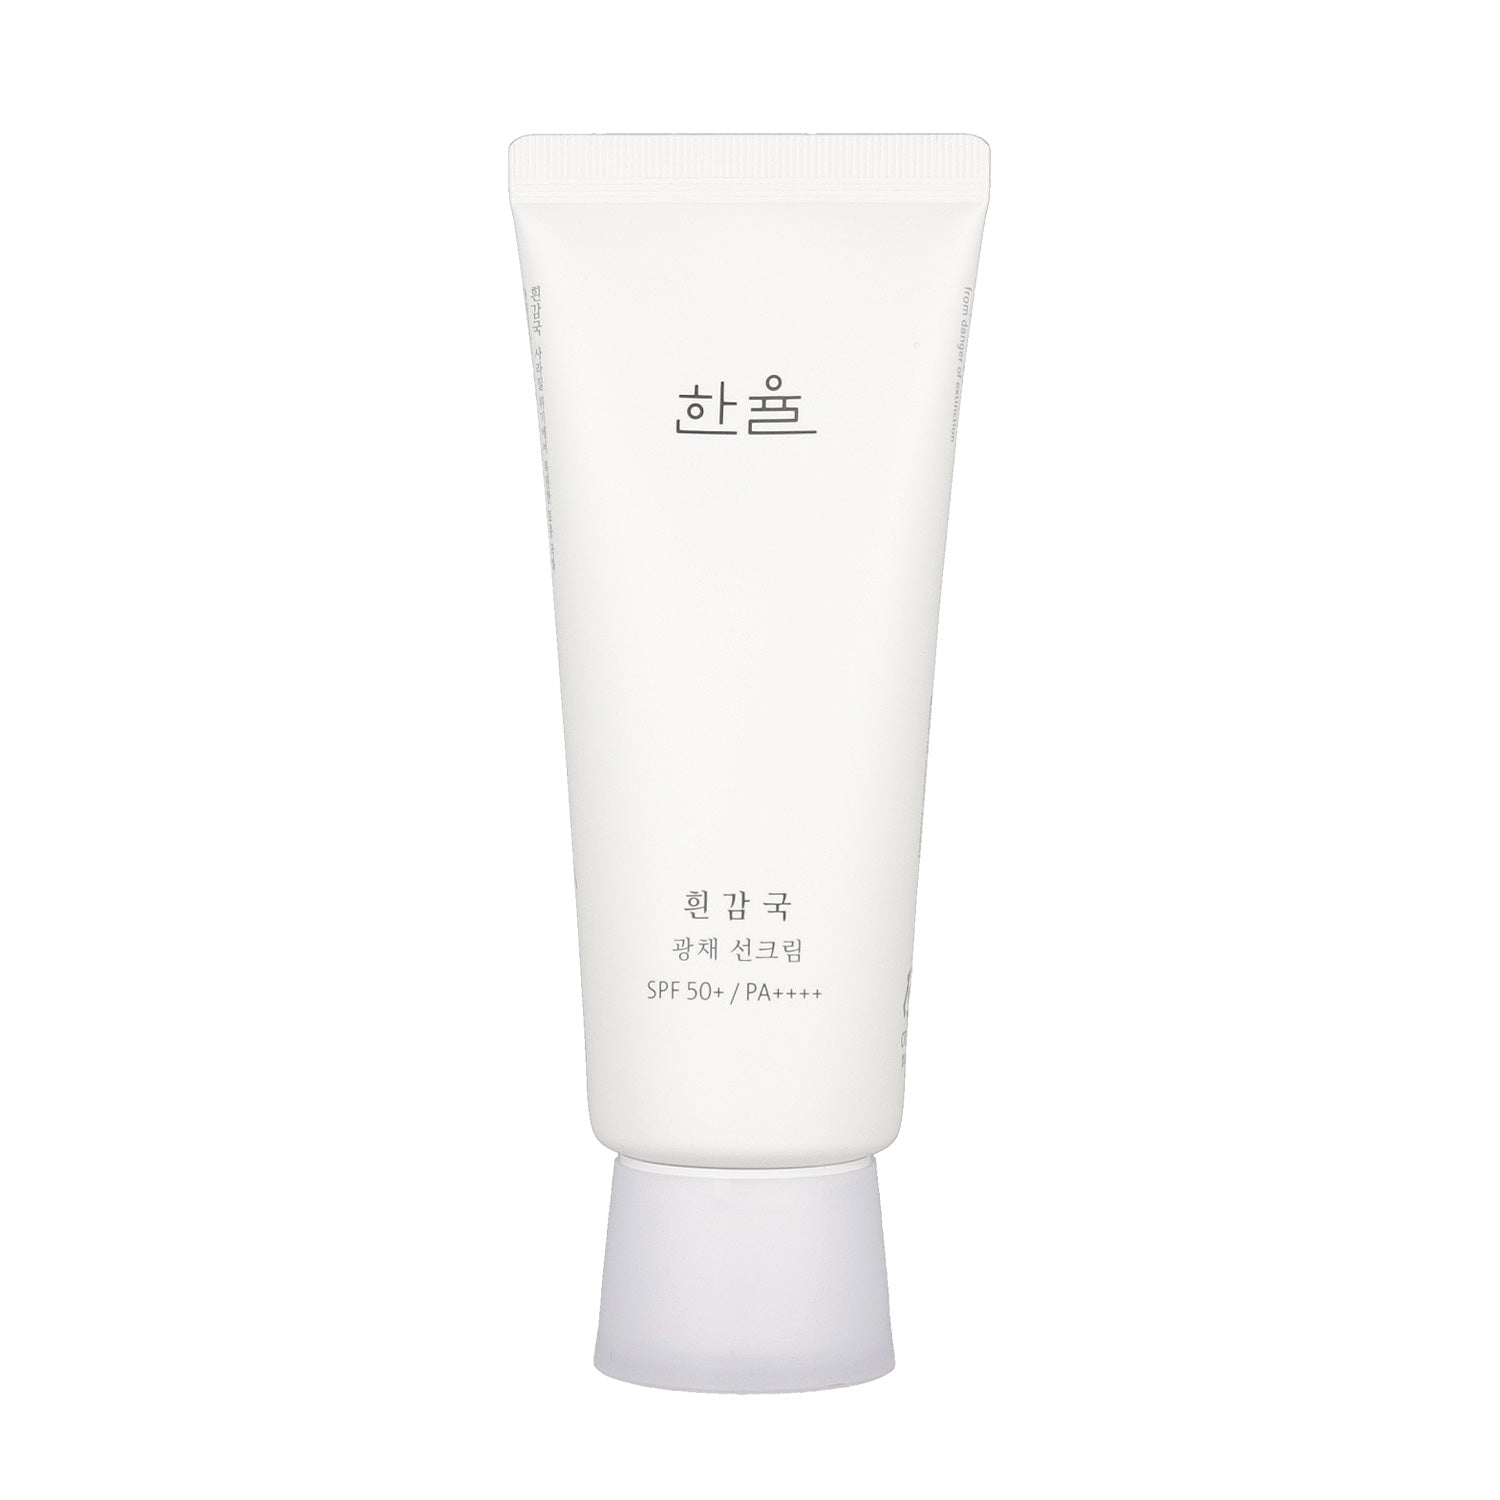 70ml Hanyul White Chrysanthemum Radiance Sunscreen cream with SPF50+ PA++++ 